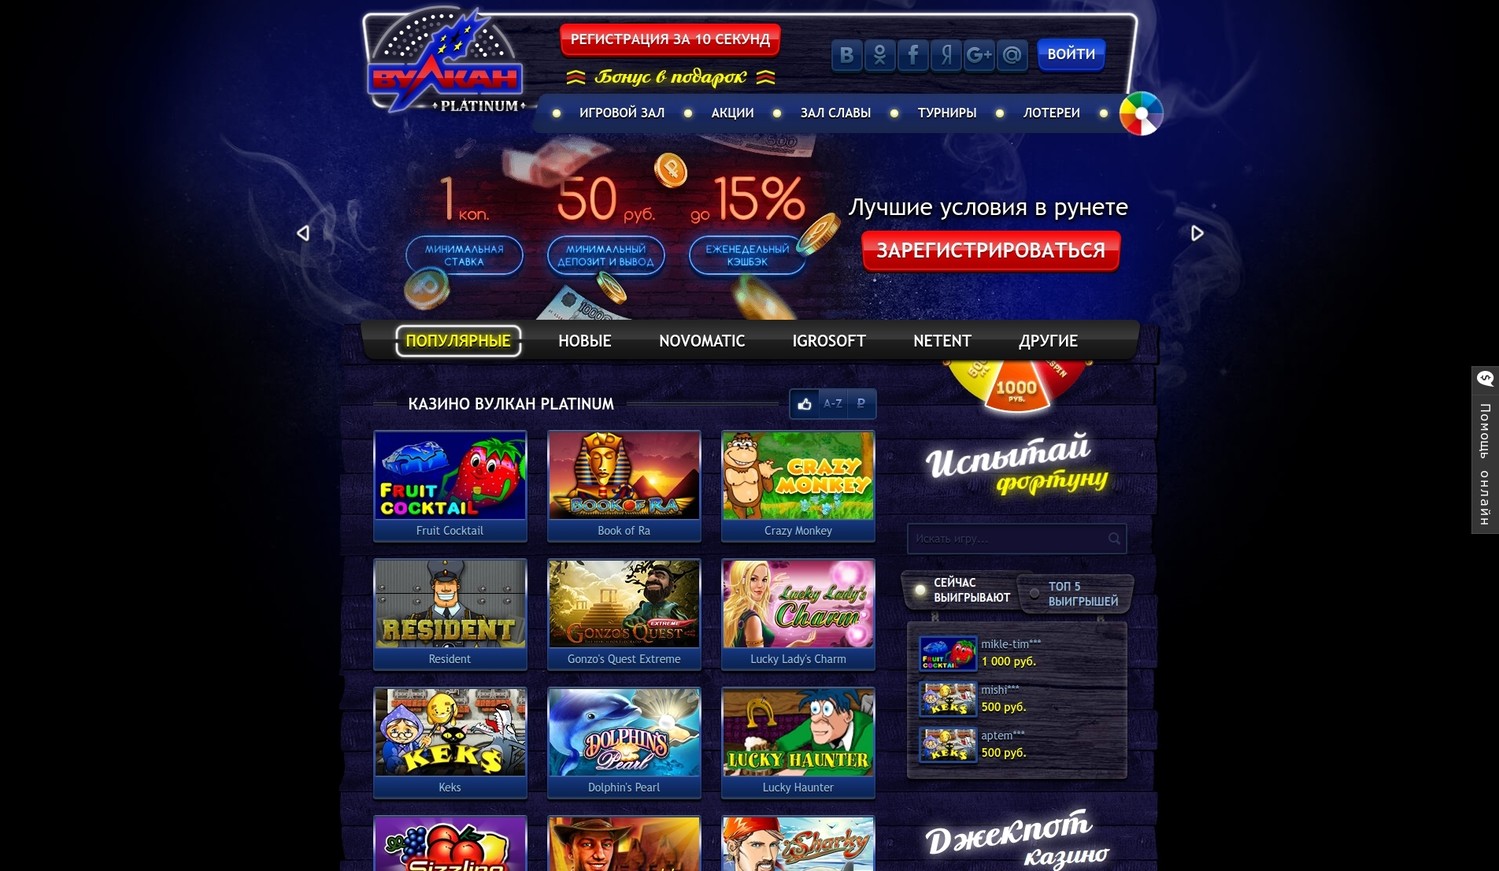 Онлайн казино Вулкан Platinum: как играть в Resident?